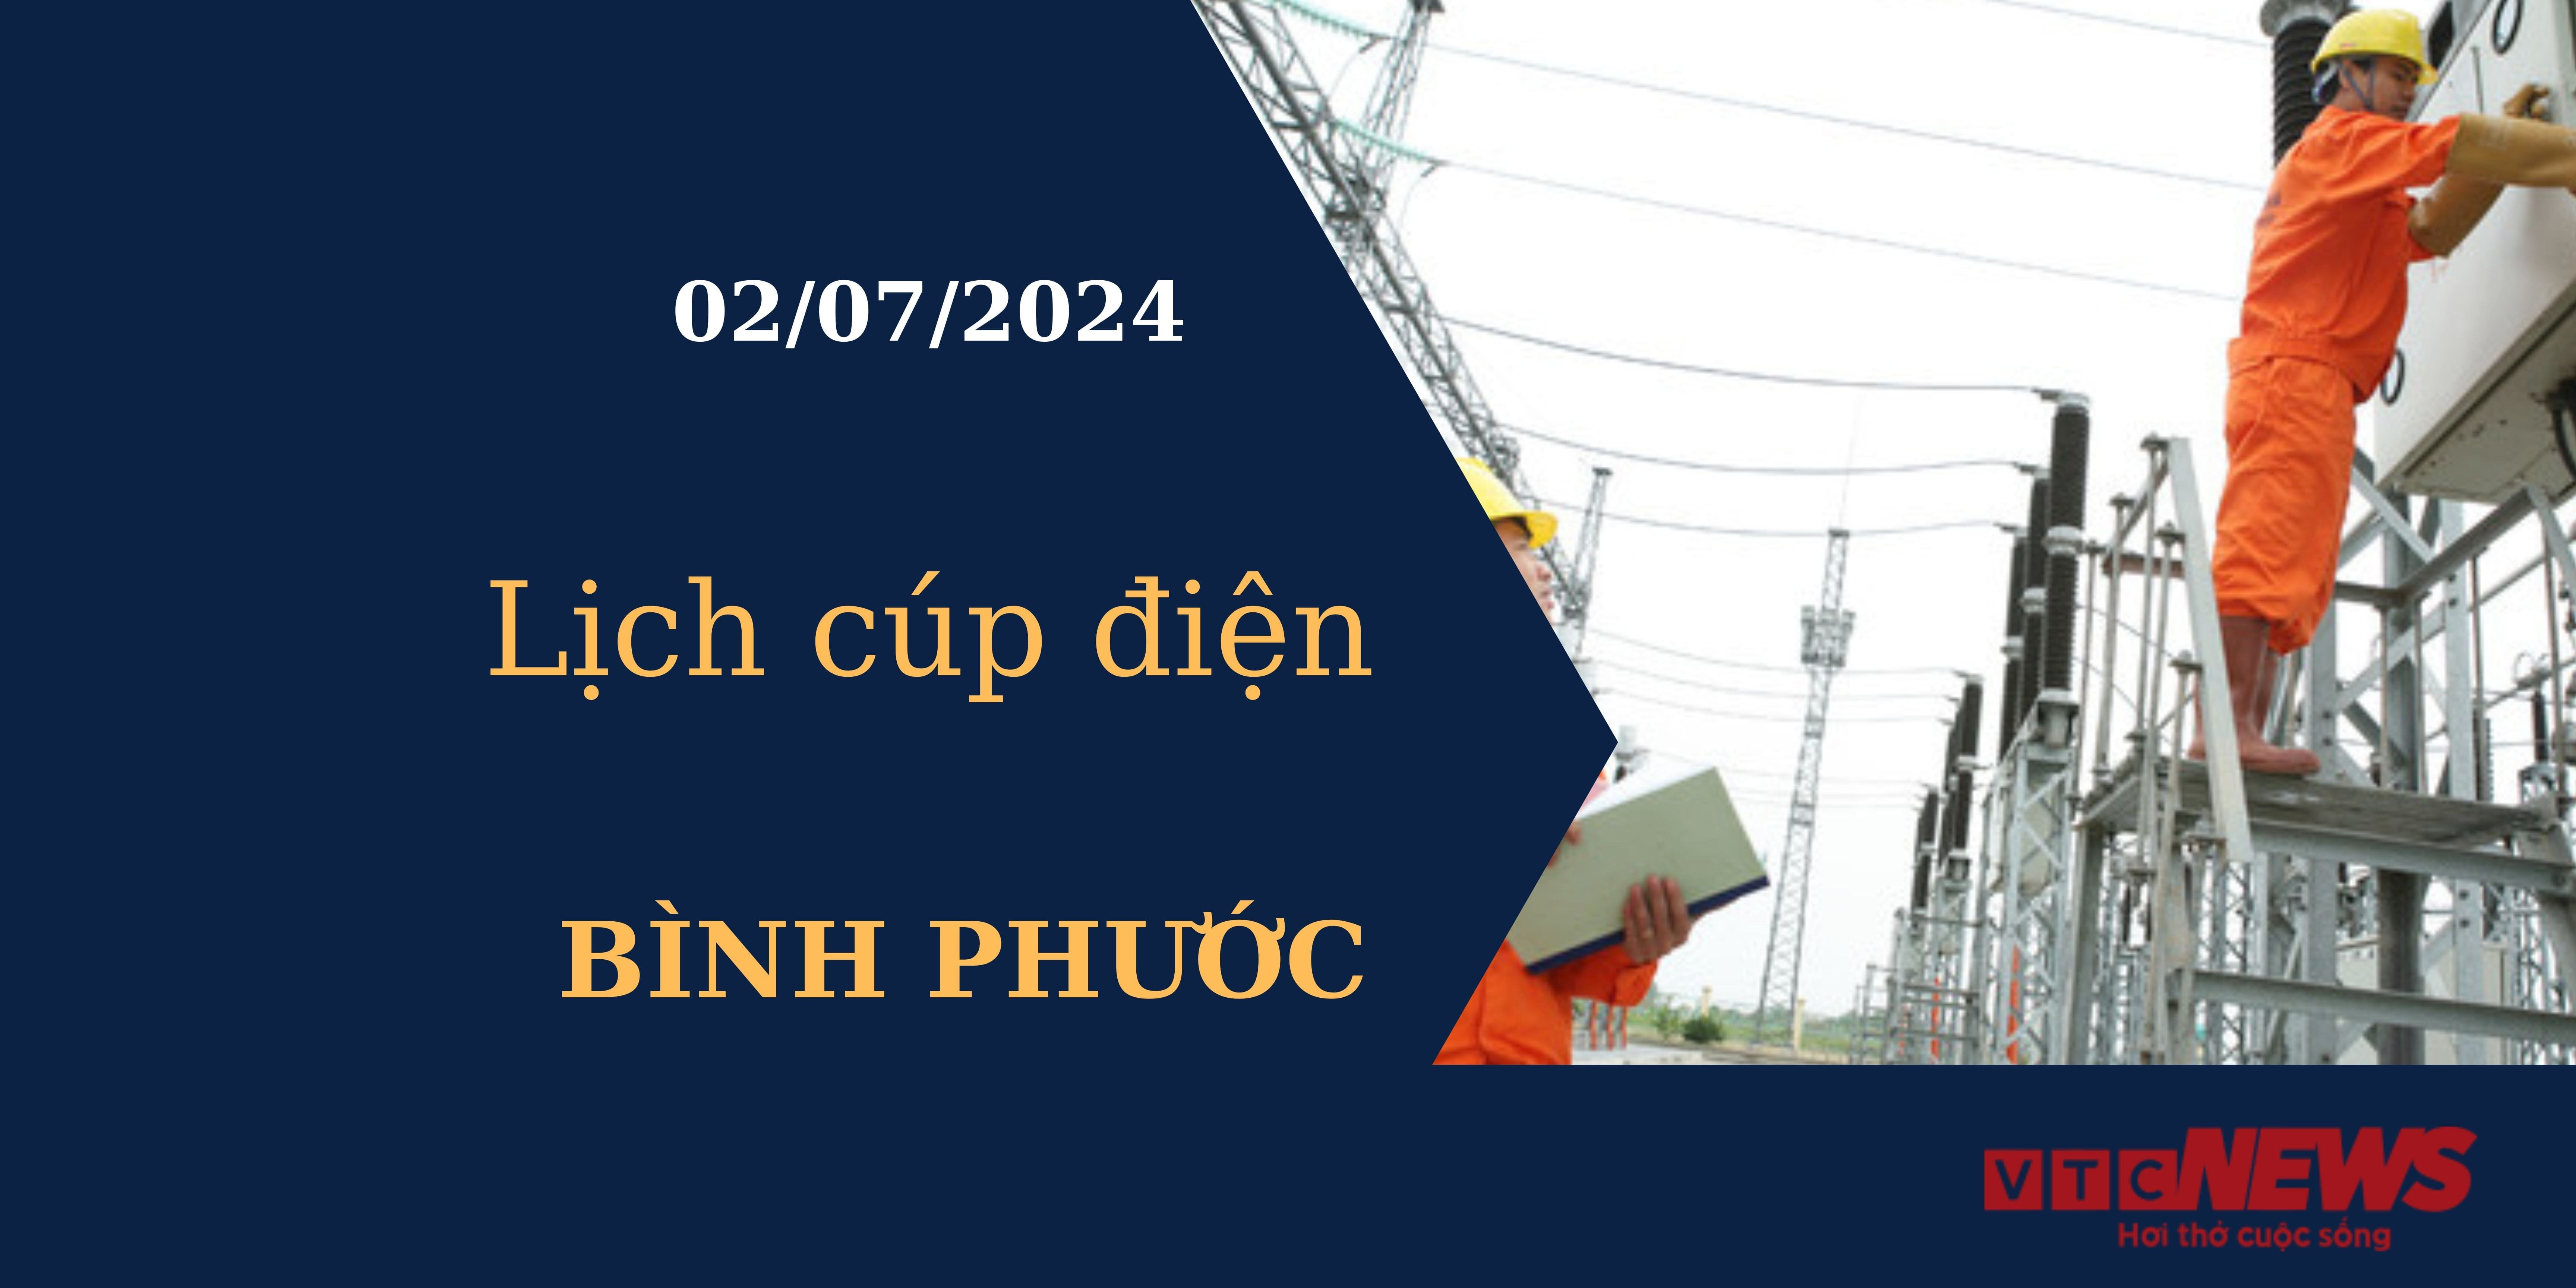 Lịch cúp điện hôm nay tại Bình Phước ngày 02/07/2024